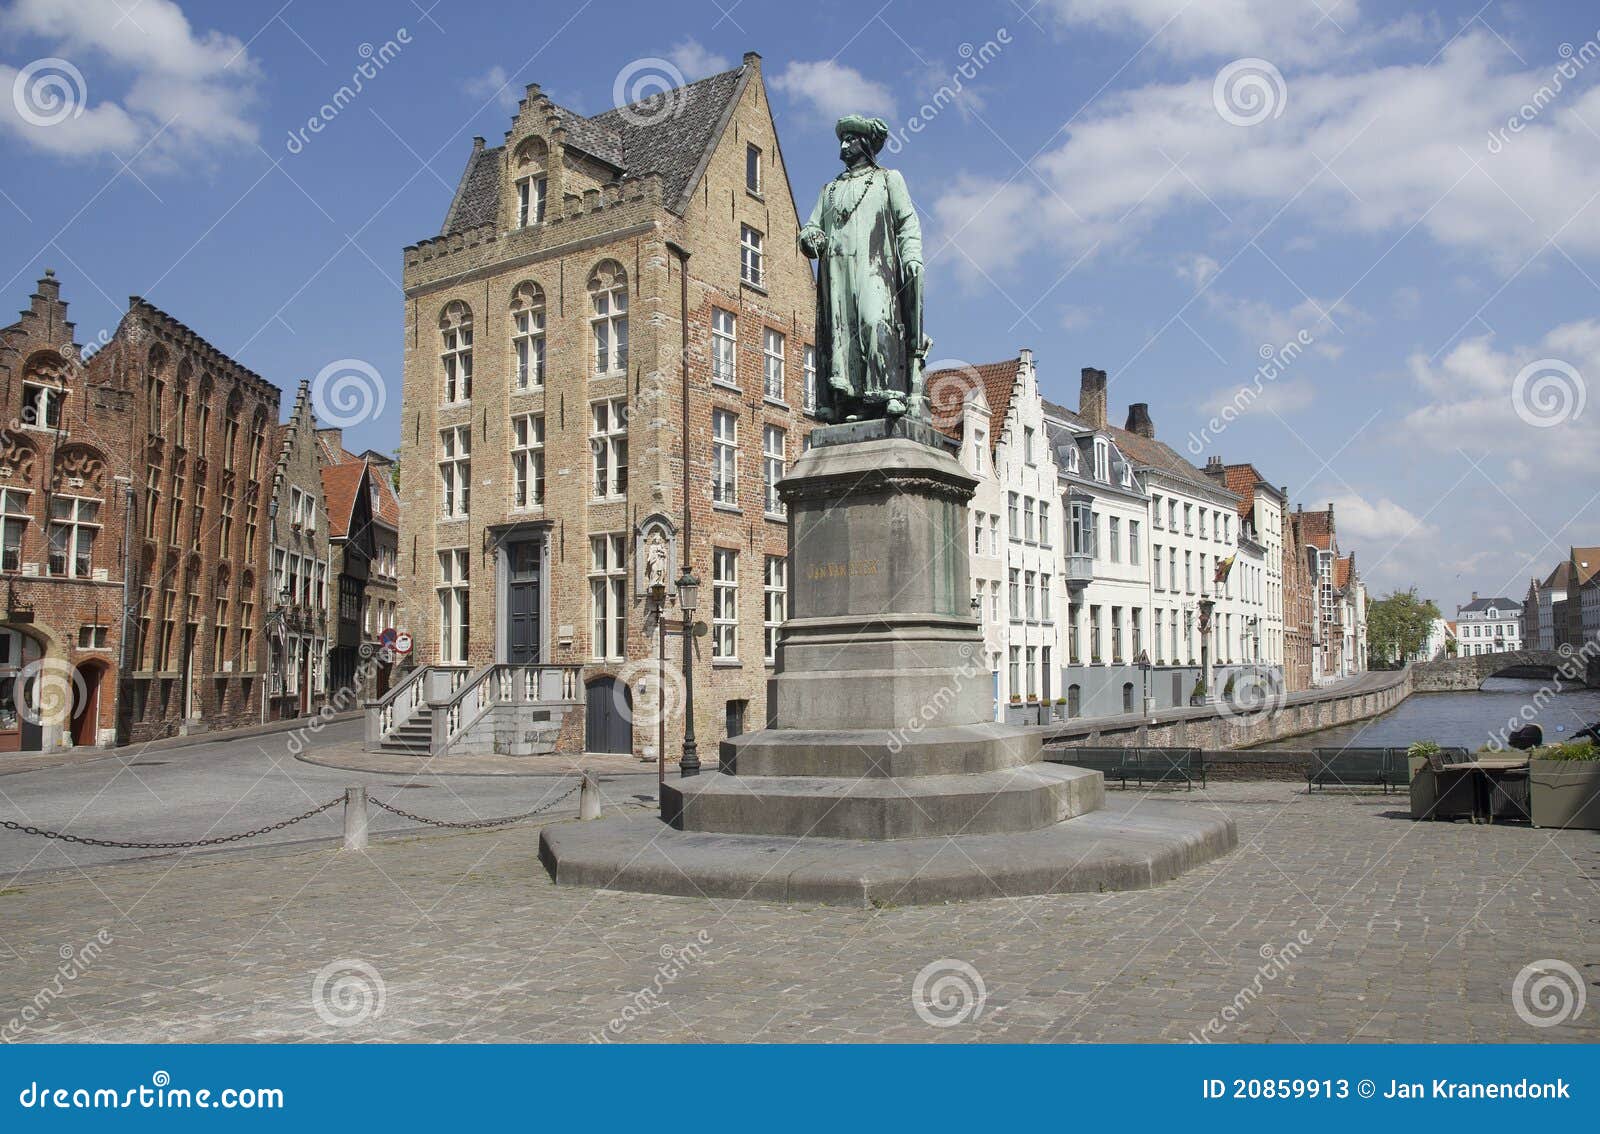 statue of jan van eyck